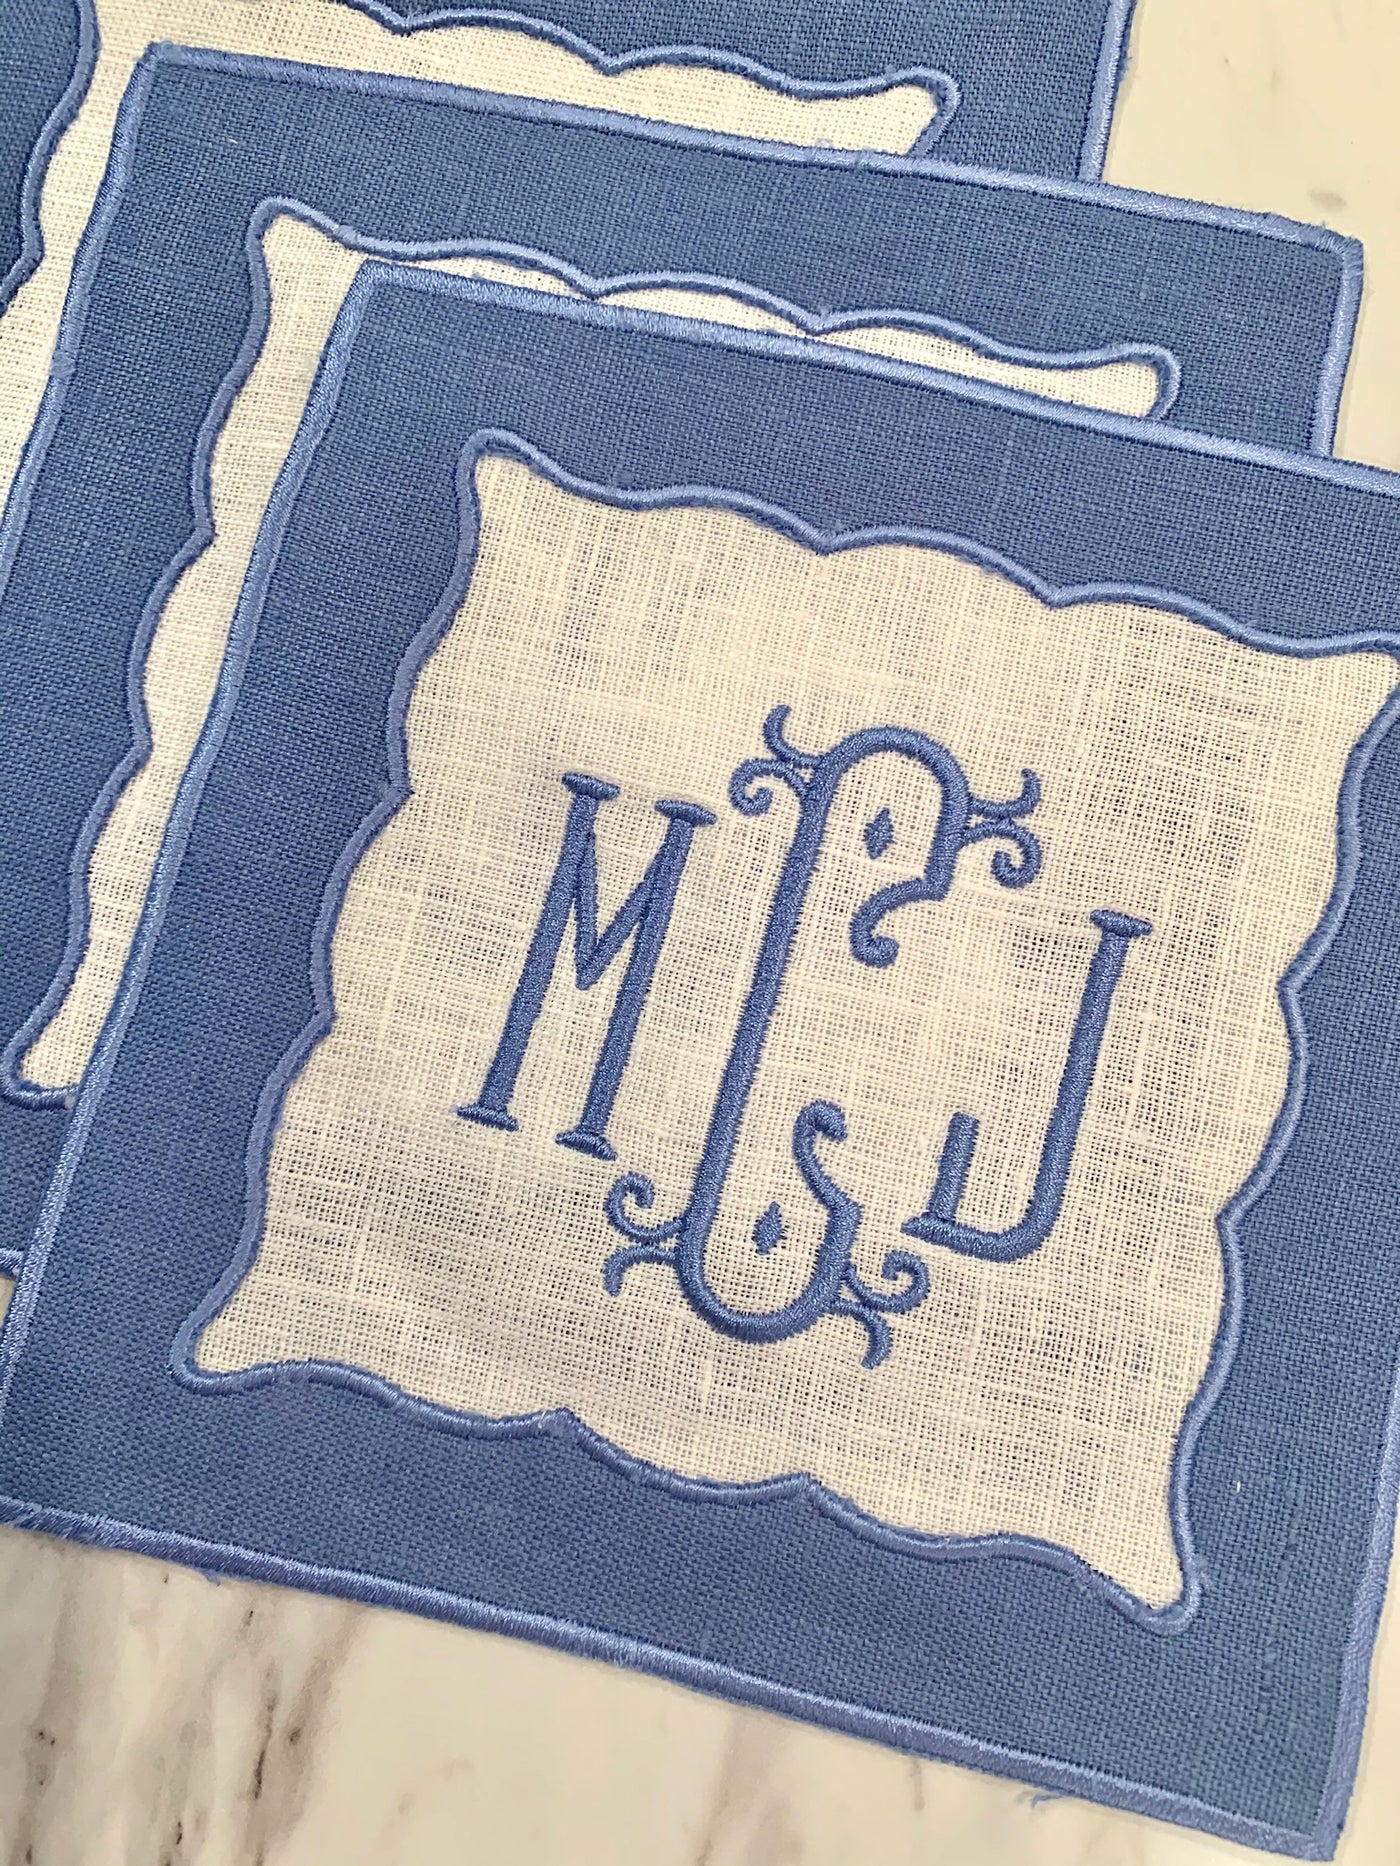 monogramed cocktail napkins